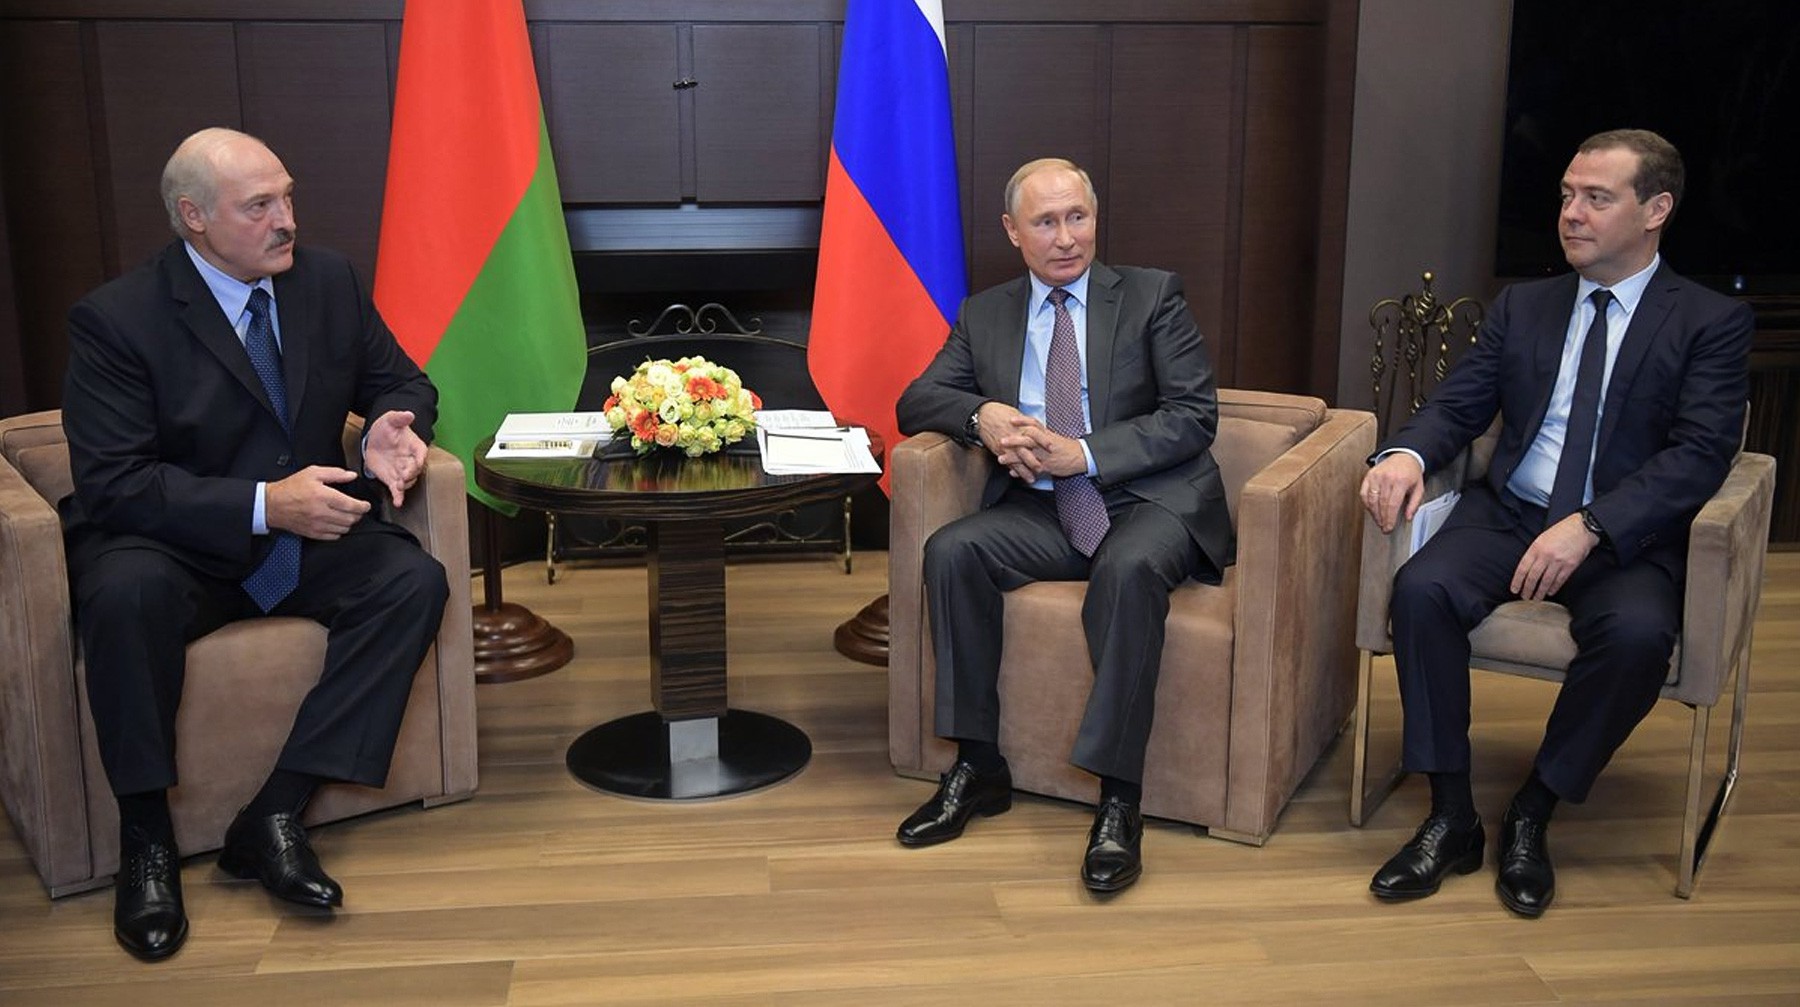 Dailystorm - Лукашенко рассказал, как его разозлила зависимость Медведева от Путина